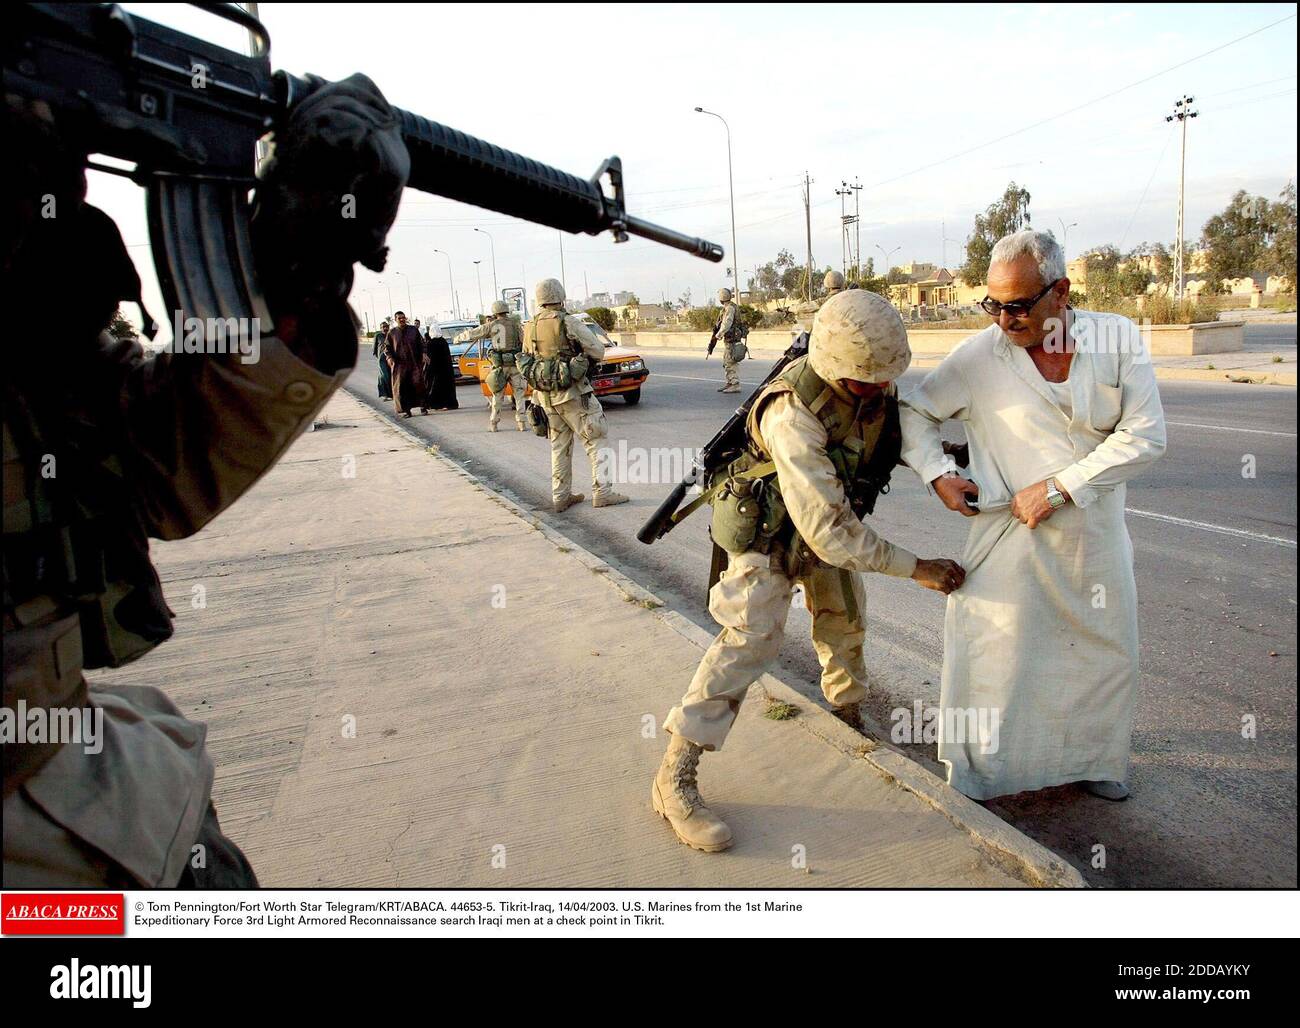 KEIN FILM, KEIN VIDEO, KEIN TV, KEIN DOKUMENTARFILM - © Tom Pennington/Fort Worth Star Telegram/KRT/ABACA. 44653-5. Tikrit-Iraq, 14/04/2003. US-Marineinfanteristen der 1. Marine Expeditionary Force 3rd Light Armored Reconnaissance suchen irakische Männer an einem Kontrollpunkt in Tikrit. Stockfoto